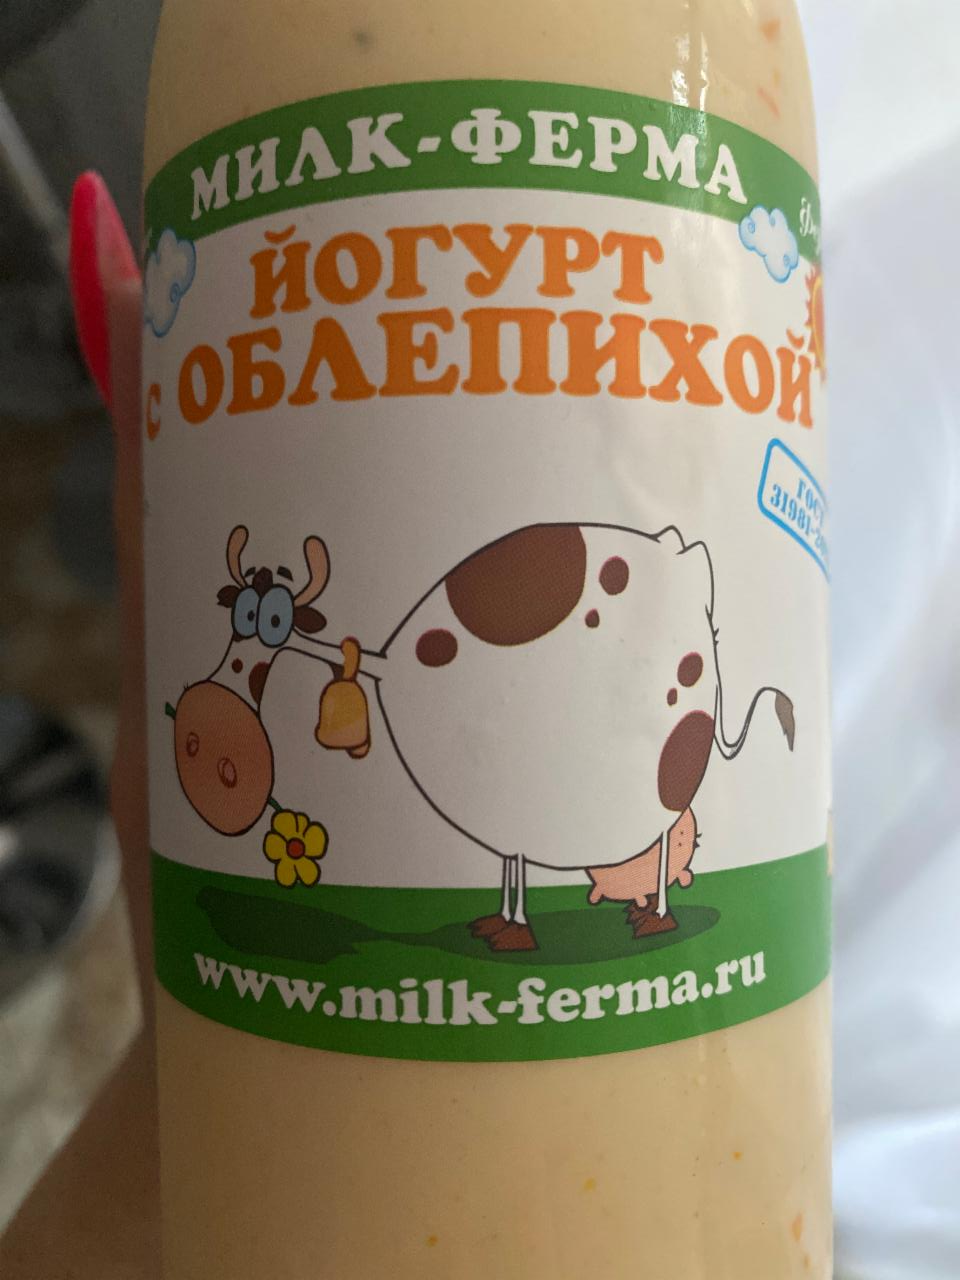 Фото - йогурт с облепихой Милк-ферма